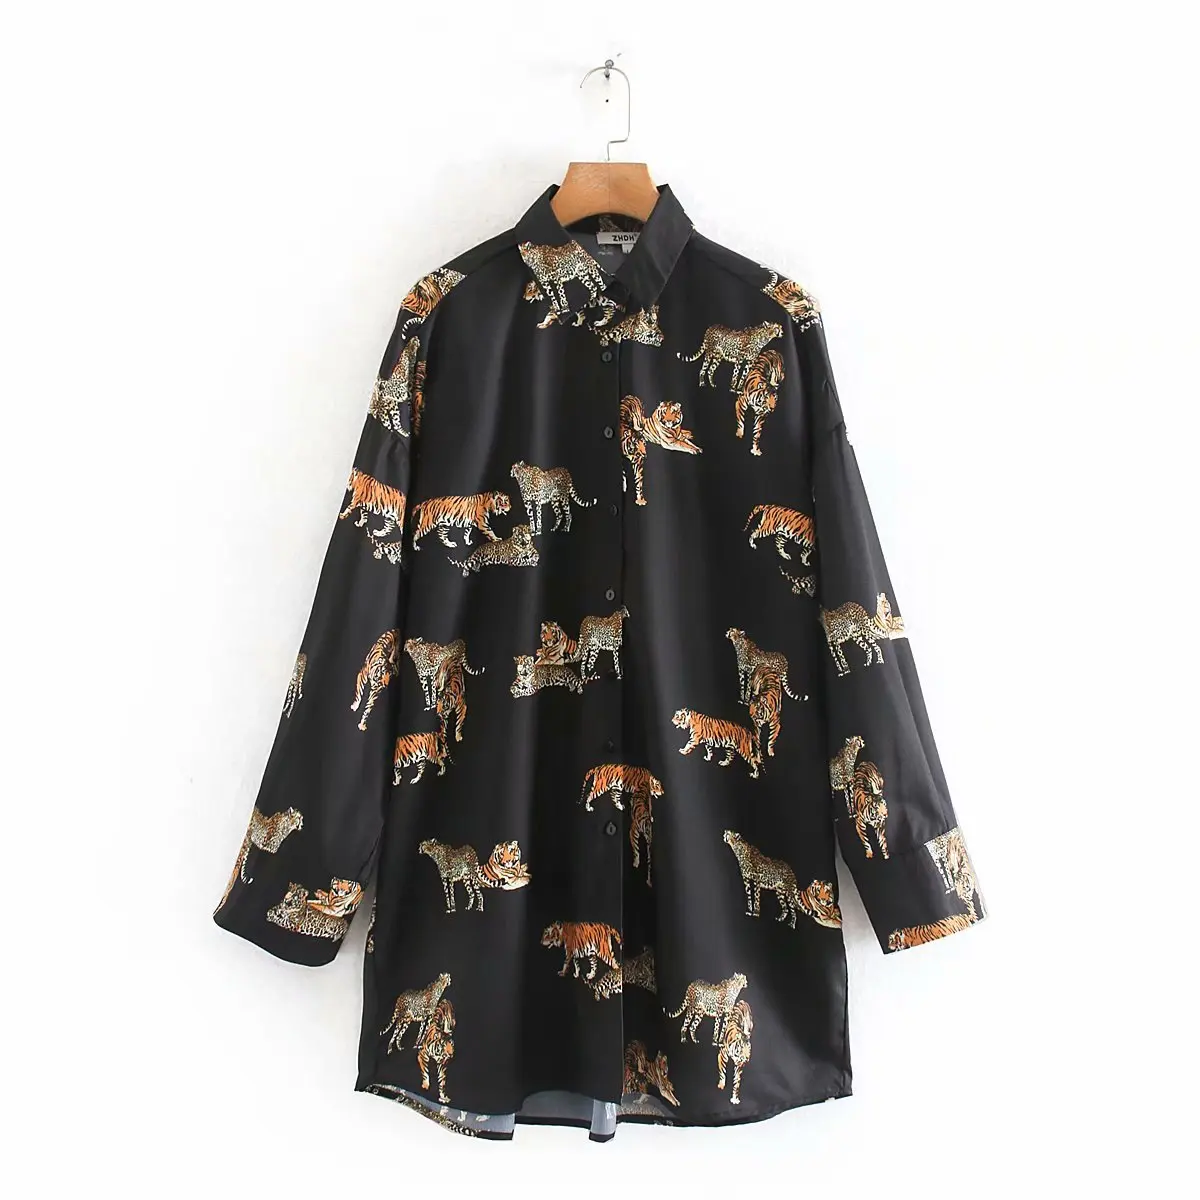 Рубашка с принтом тигра, леопарда, животных, Европейская мода, рубашки бойфренда, женские топы с длинным рукавом, большие размеры - Цвет: black